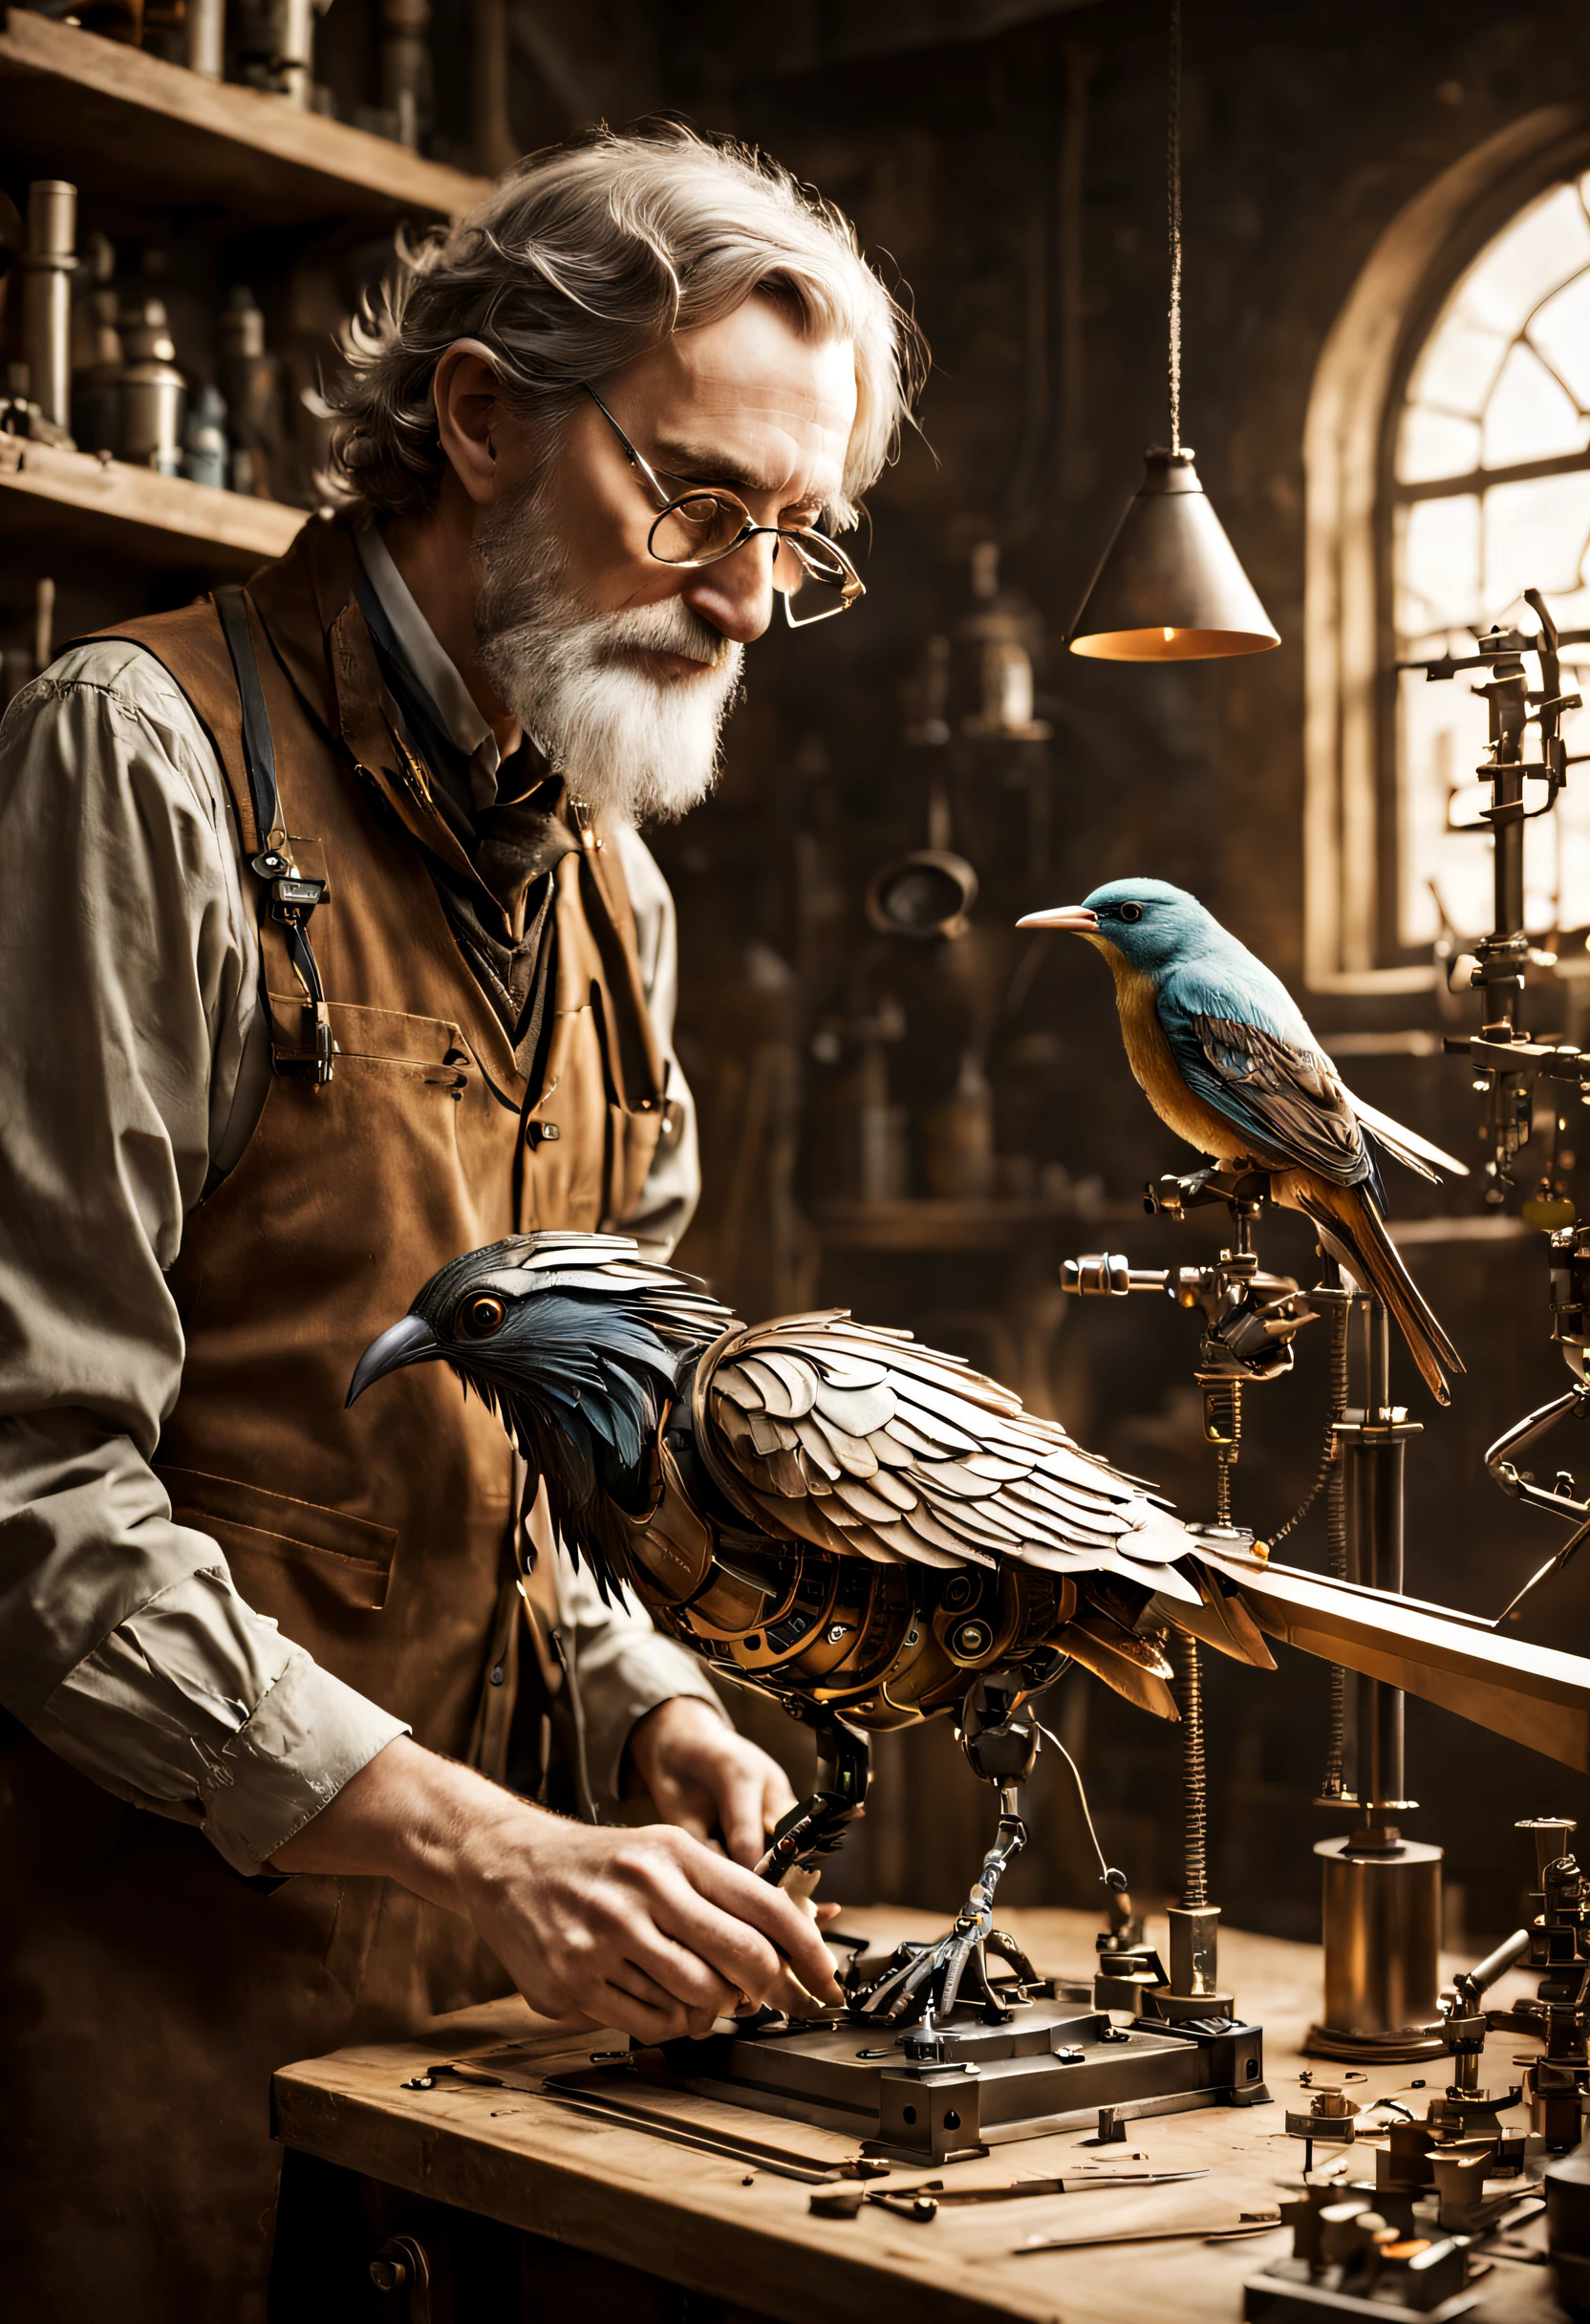 Un scientifique crée un oiseau mécanique dans un atelier. Il y met les dernières pièces. Ambiance magique à la Tolkien.